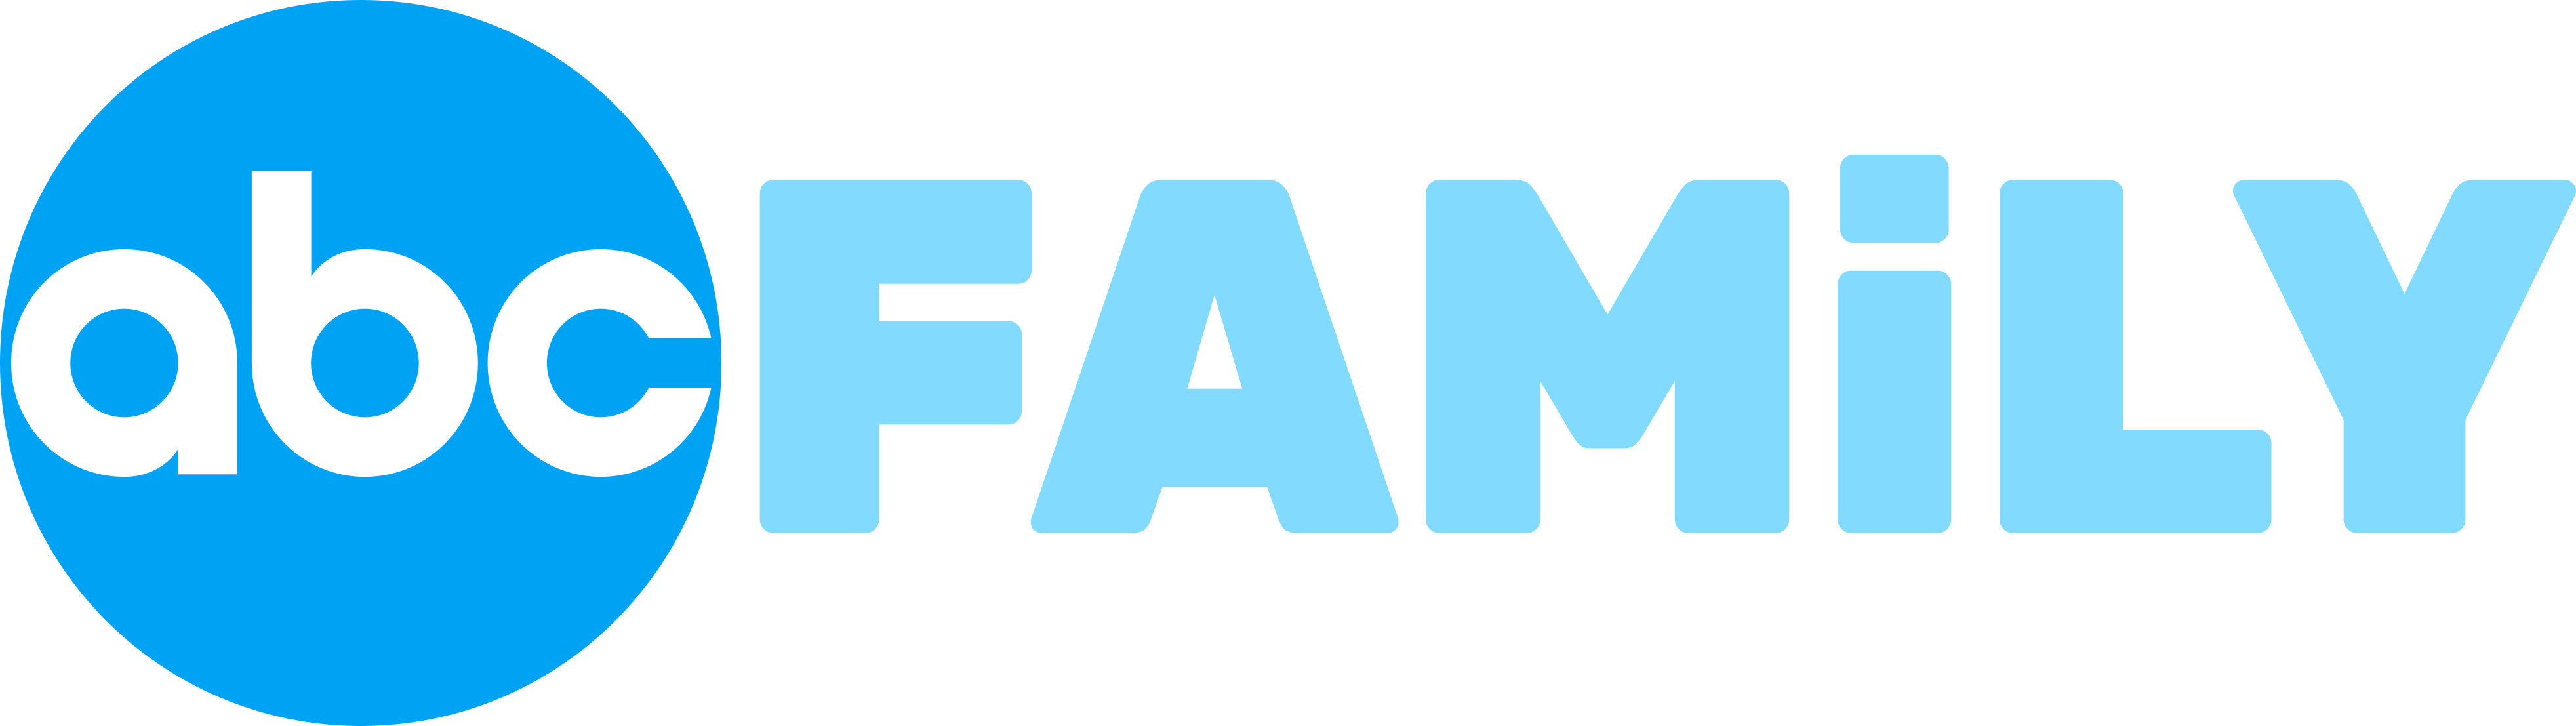 ABC Family Logo - ABC Family (fake revival) - Google+